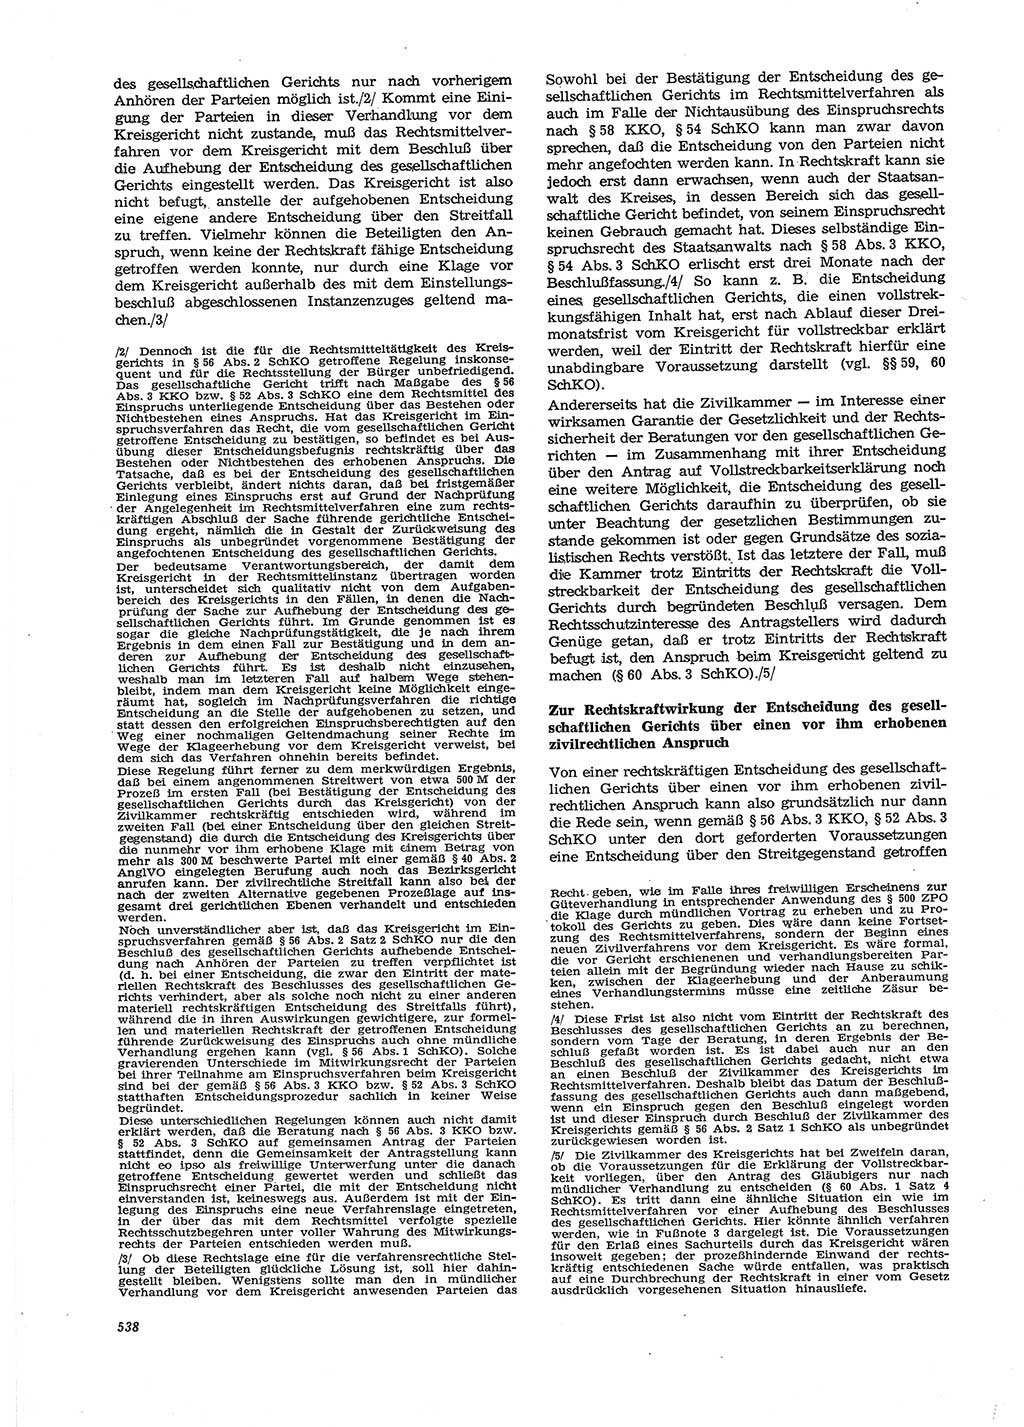 Neue Justiz (NJ), Zeitschrift für Recht und Rechtswissenschaft [Deutsche Demokratische Republik (DDR)], 27. Jahrgang 1973, Seite 538 (NJ DDR 1973, S. 538)